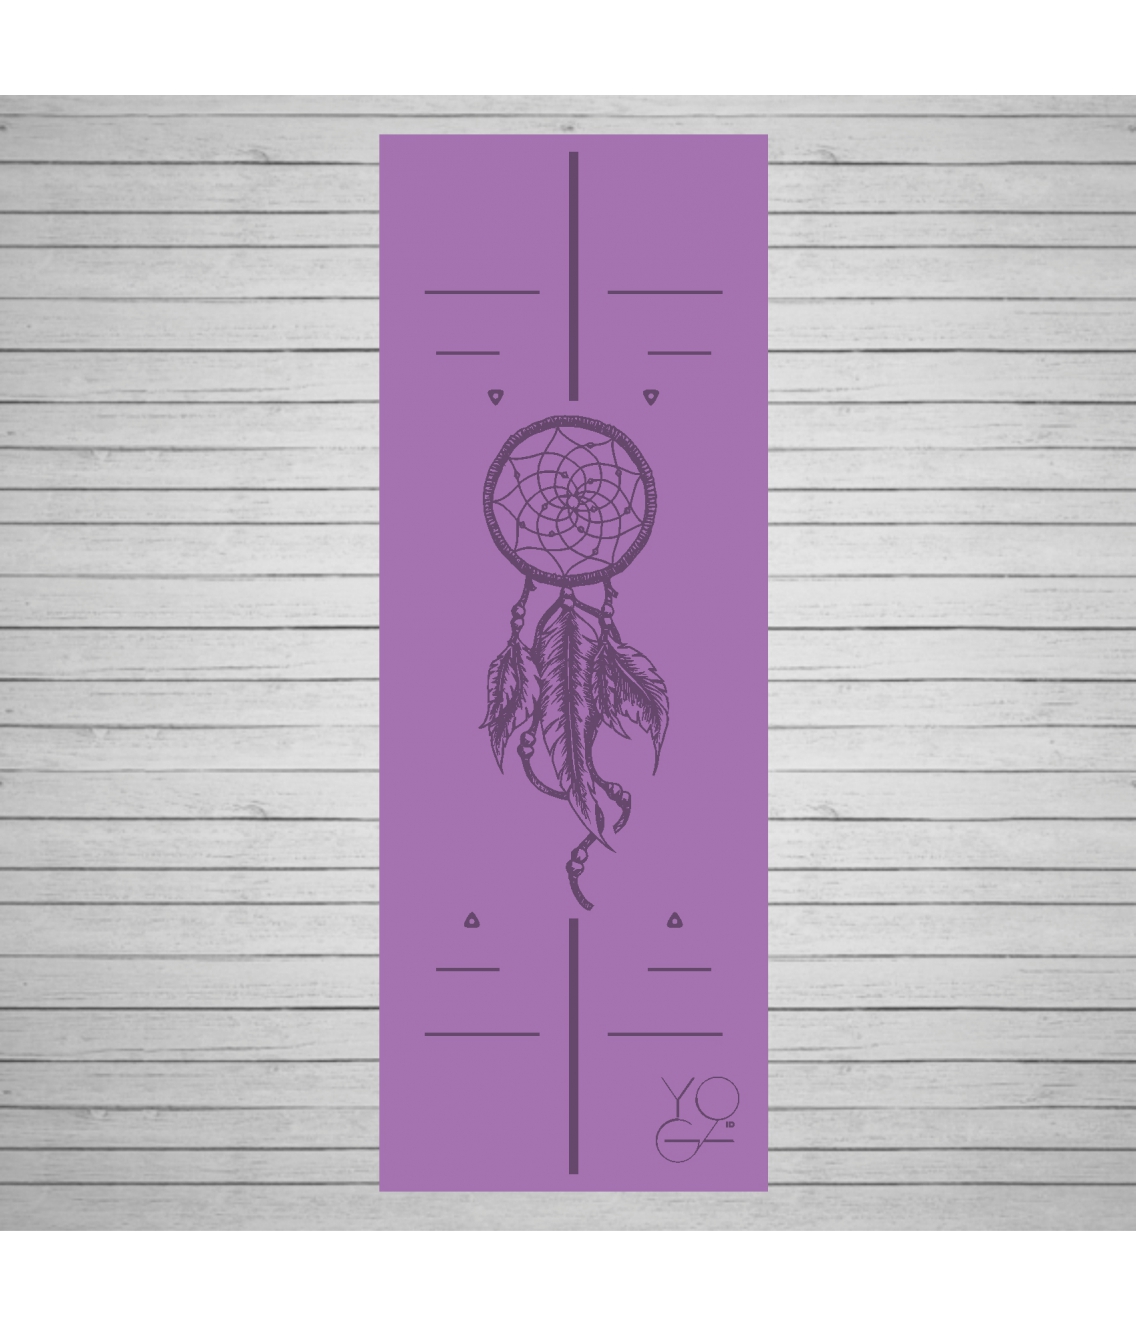 Каучуковый коврик для йоги Amulet Purple с покрытием Non Slip